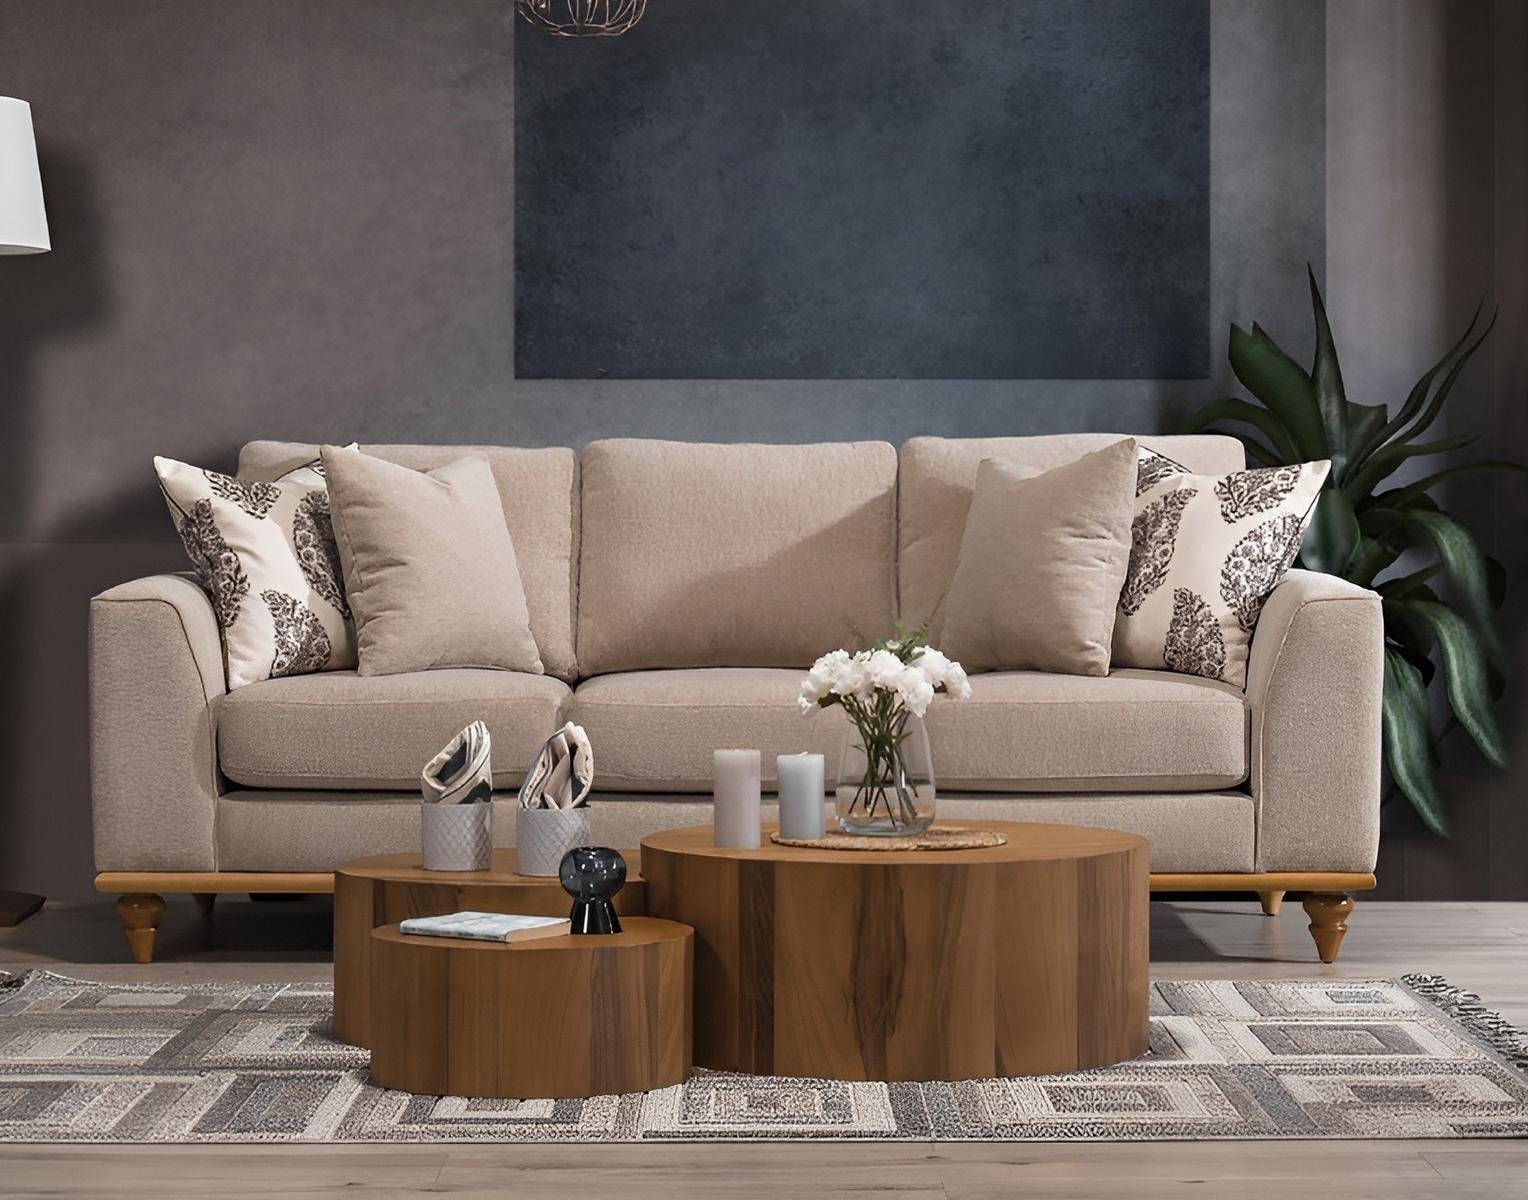 JVmoebel 3-Sitzer Design Sofa Dreisitzer Wohnzimmer Modern Möbel Luxus Beige, 1 Teile, Made in Europa